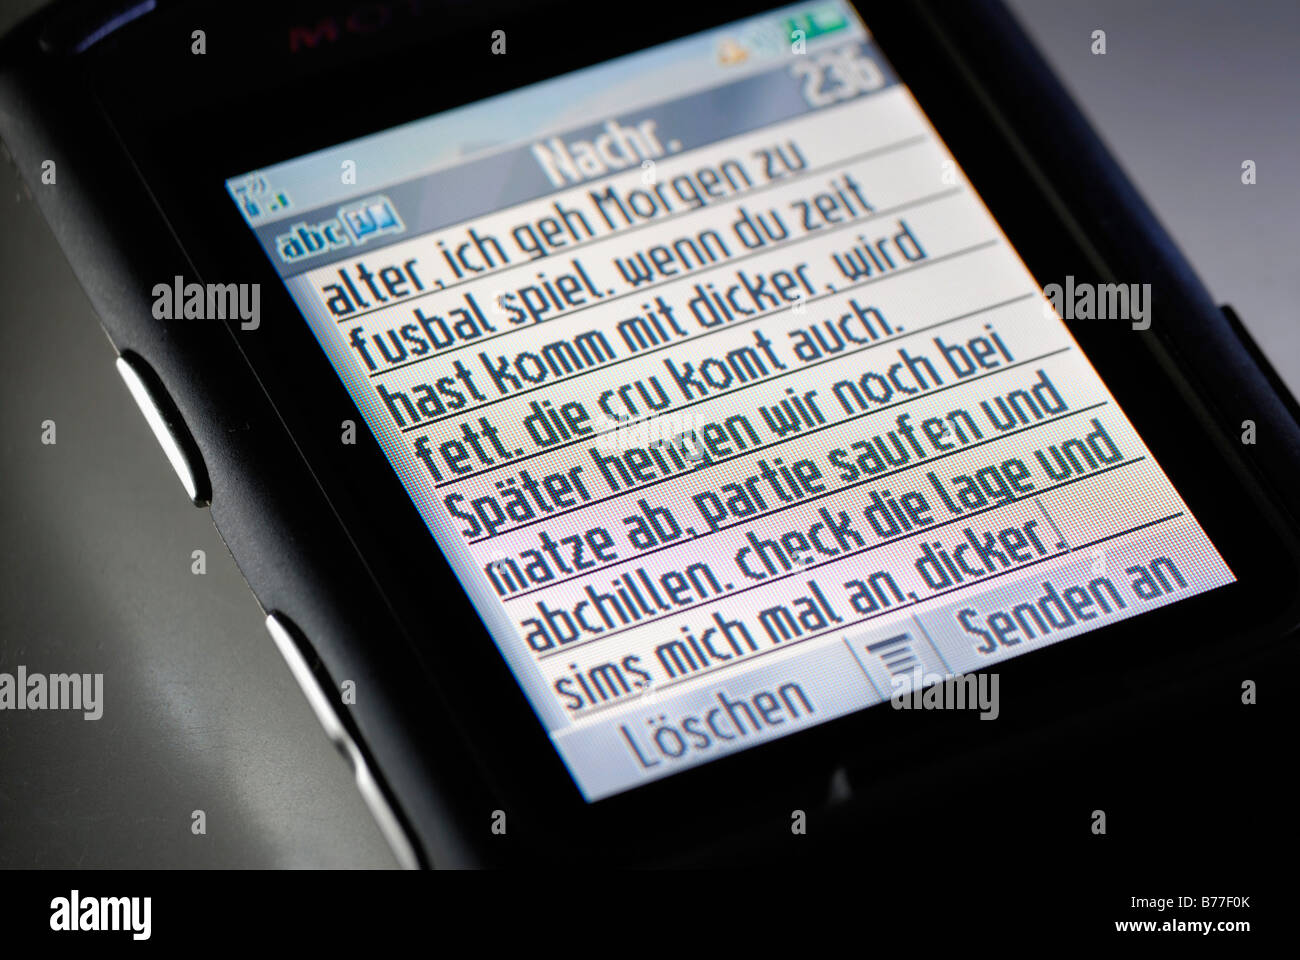 SMS-Nachricht auf dem Display des Mobiltelefons im Jugend-Slang mit Rechtschreibfehlern Stockfoto